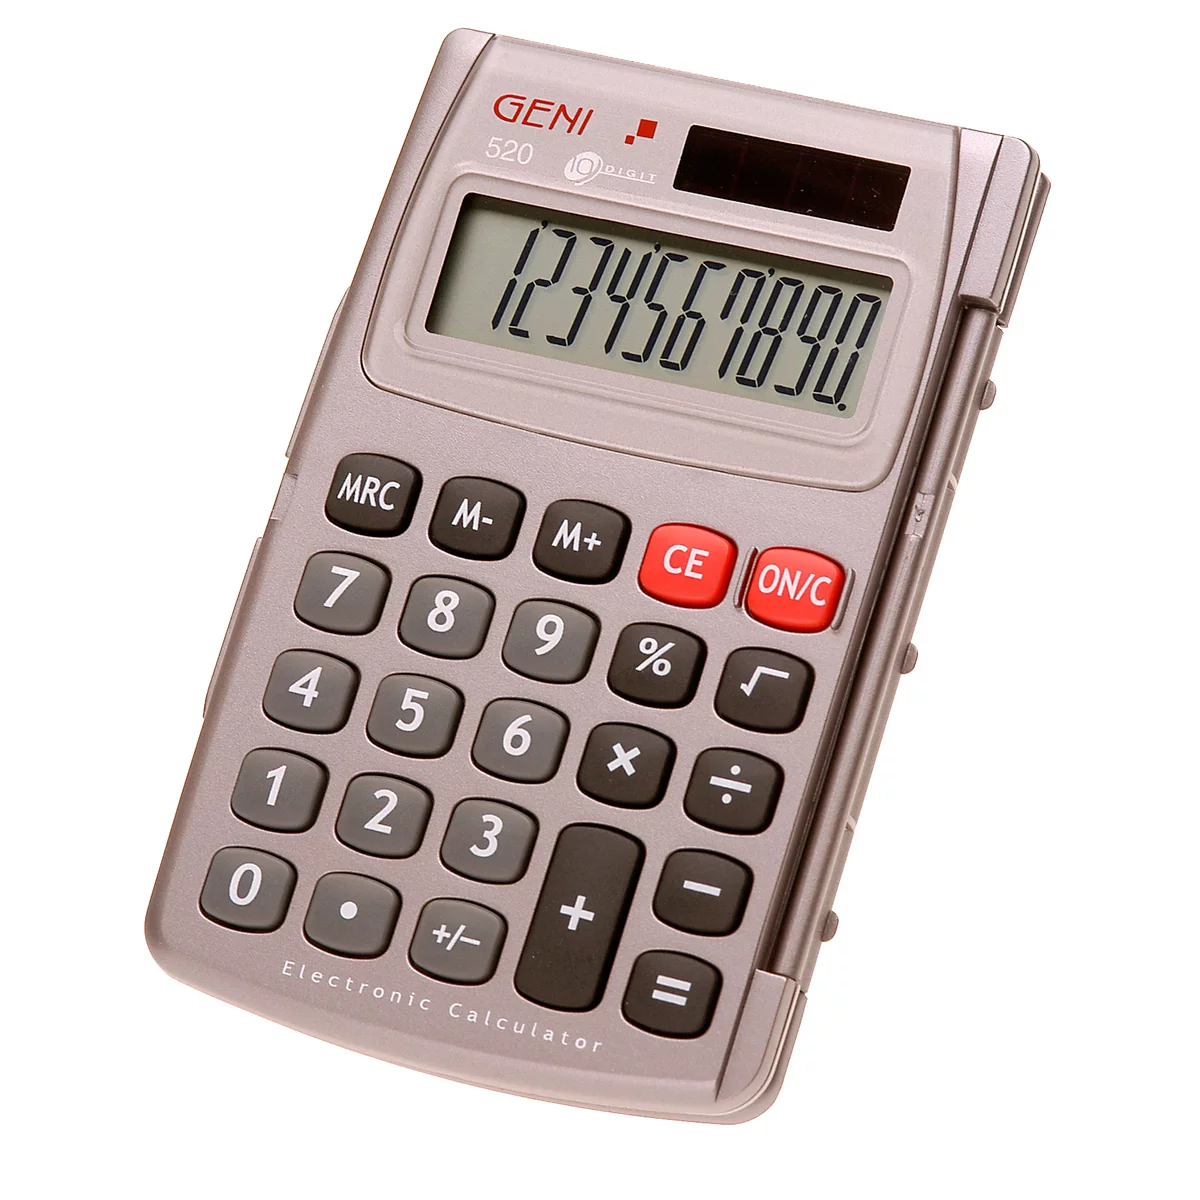 Calculadora de bolsillo Genie 520, pantalla de 10 dígitos, alimentado con pilas/solar y con tapa abatible